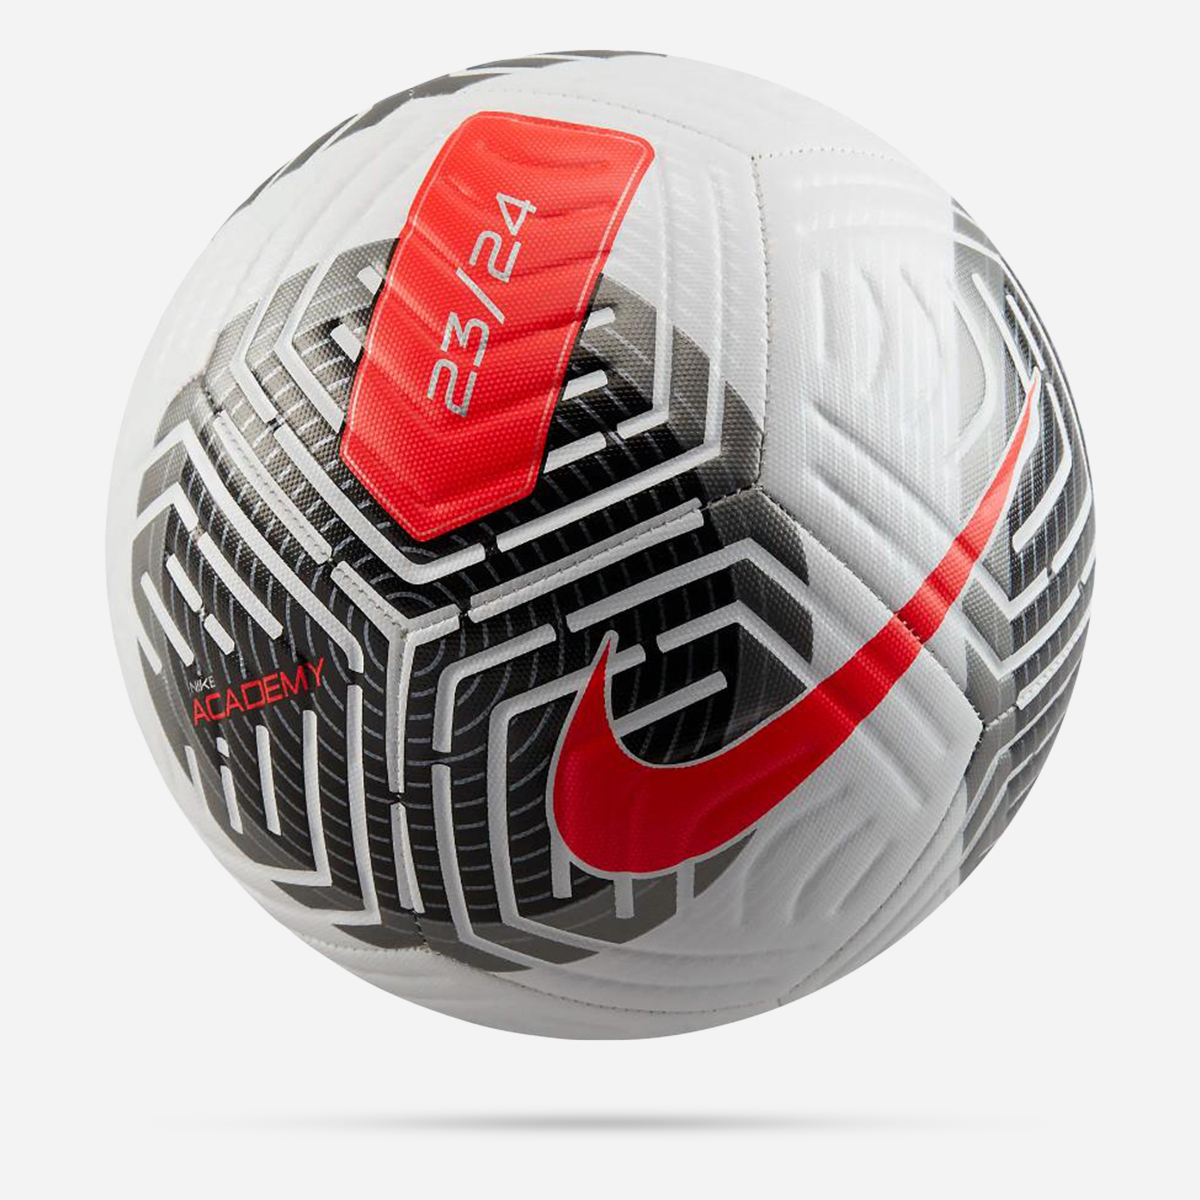 AN312363 Academy Soccer Ball